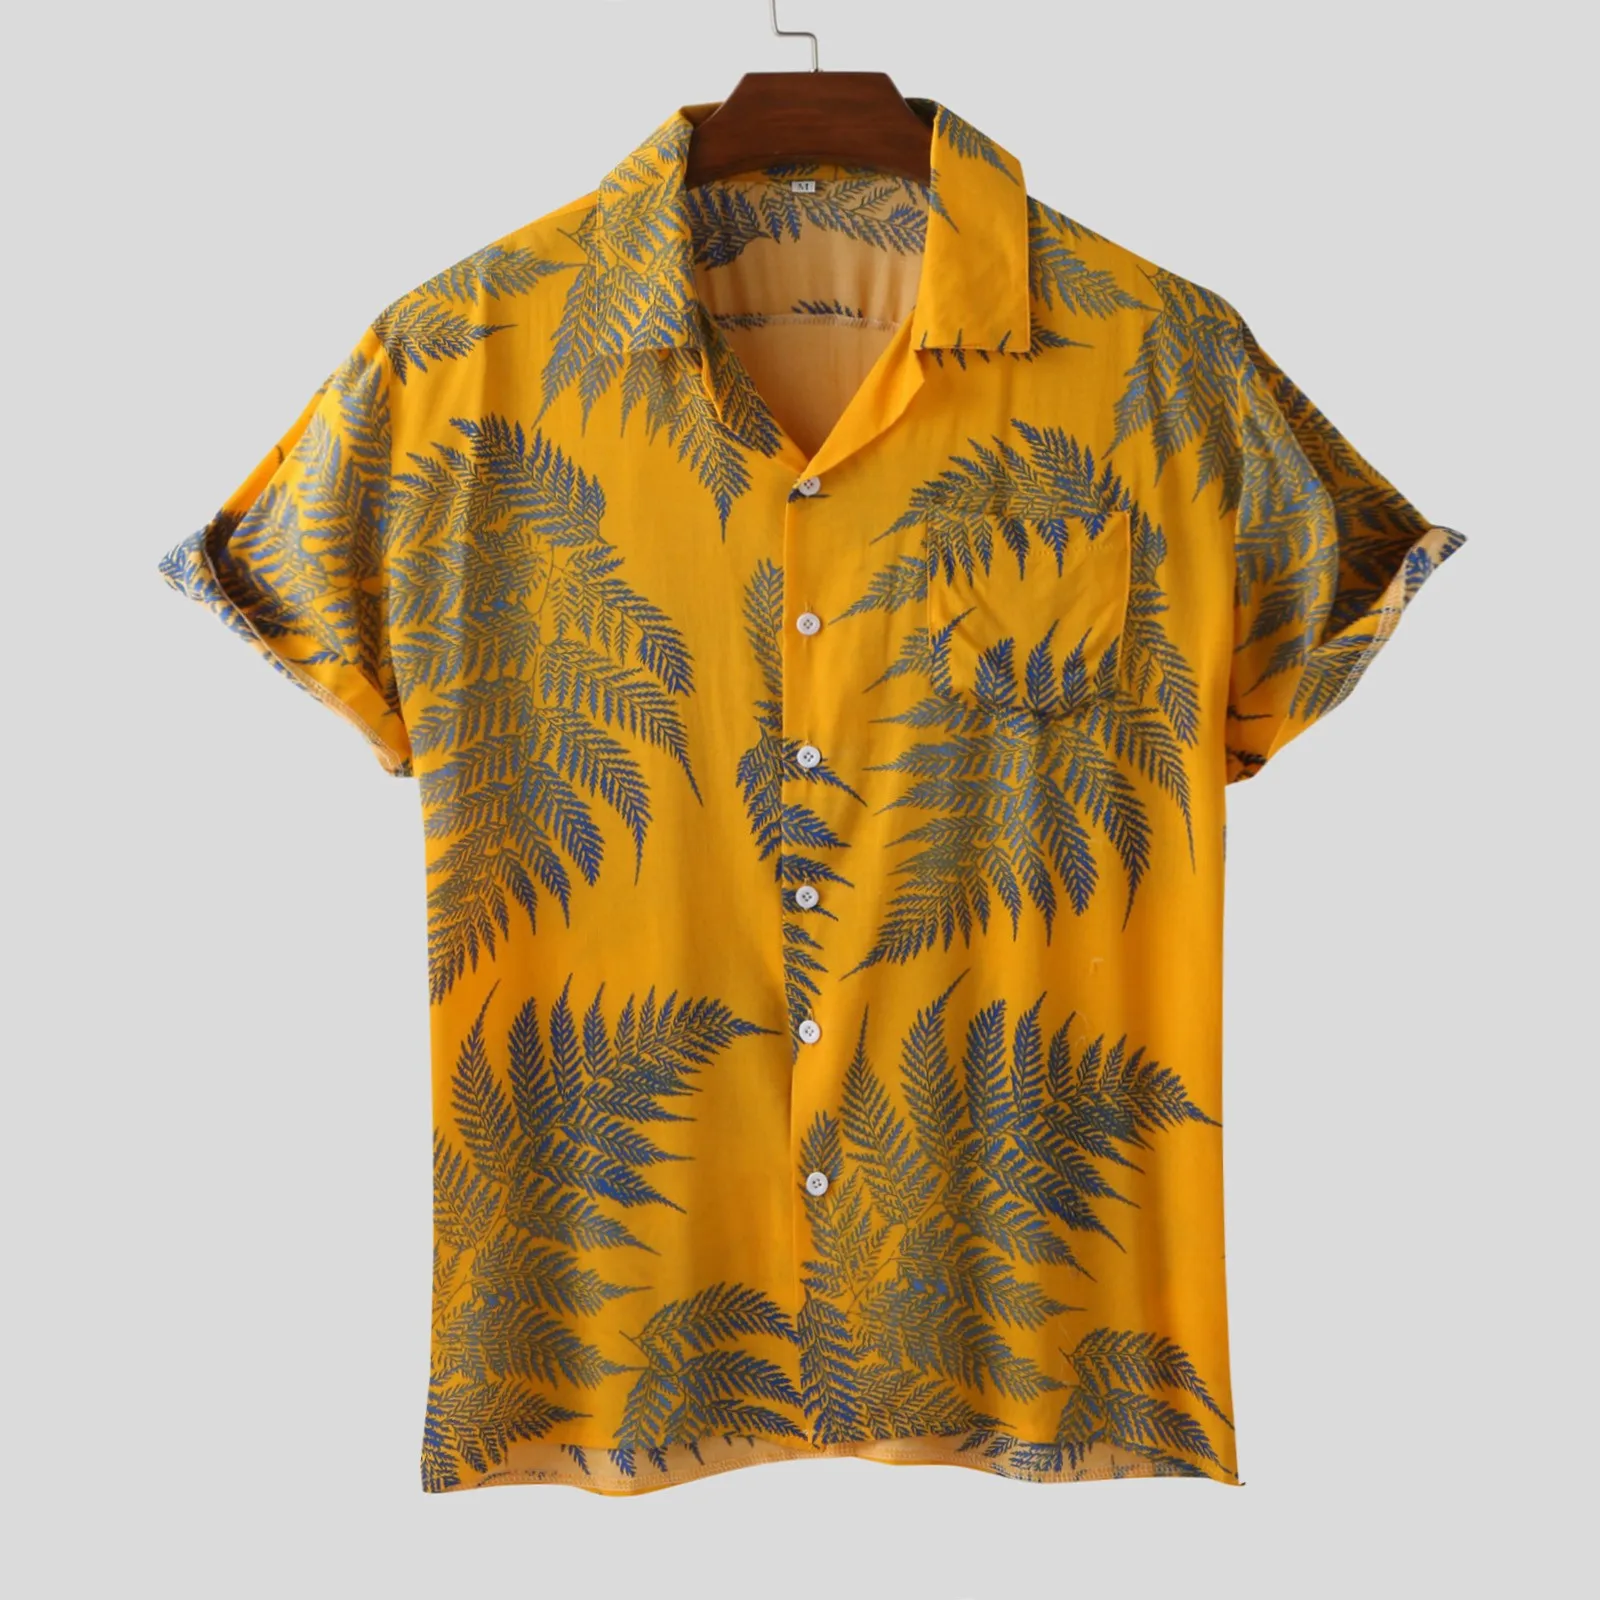 

Linen Short Sleeve Shirt Men Summer Floral Loose Baggy Casual Hawaii Holiday Beach Shirt Tee Tops Buttons Blouse Hawaiian Shirts